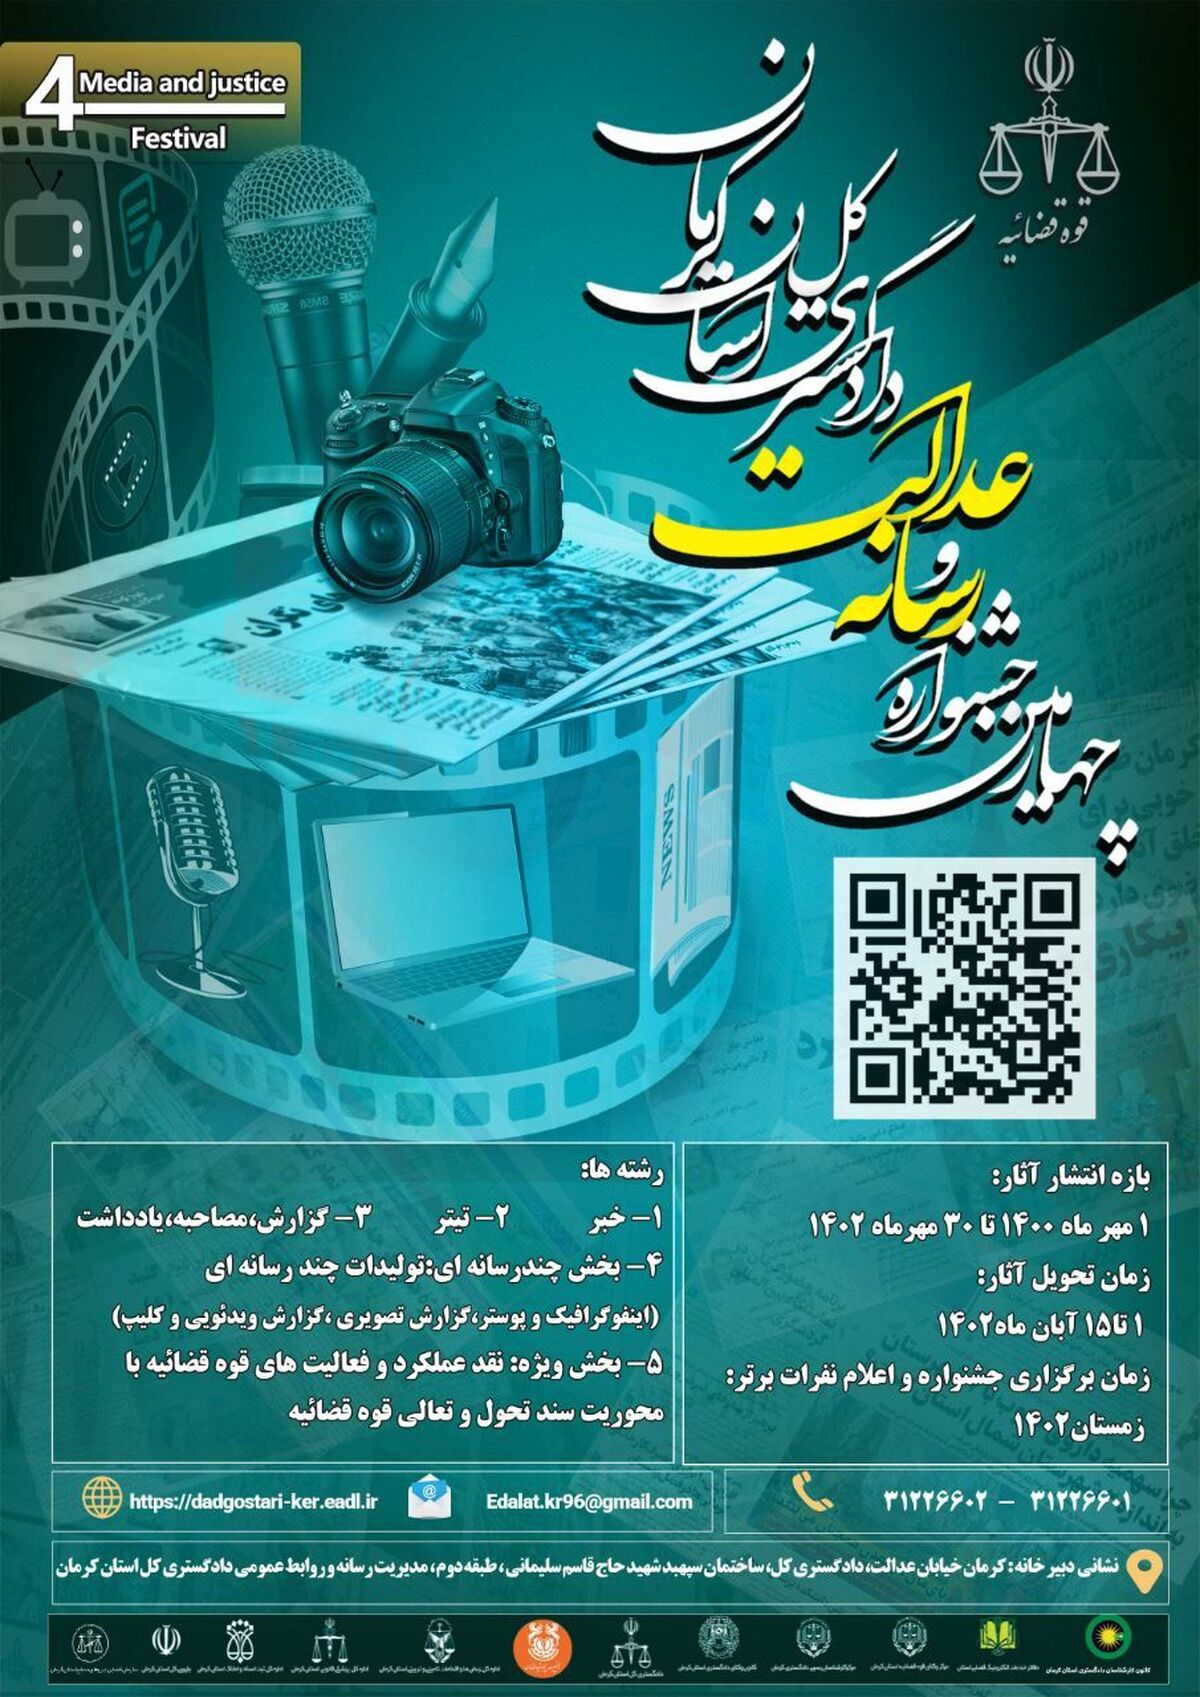 یکم الی ۱۵ آبان مهلت ارسال آثار به چهارمین جشنواره رسانه و عدالت در کرمان